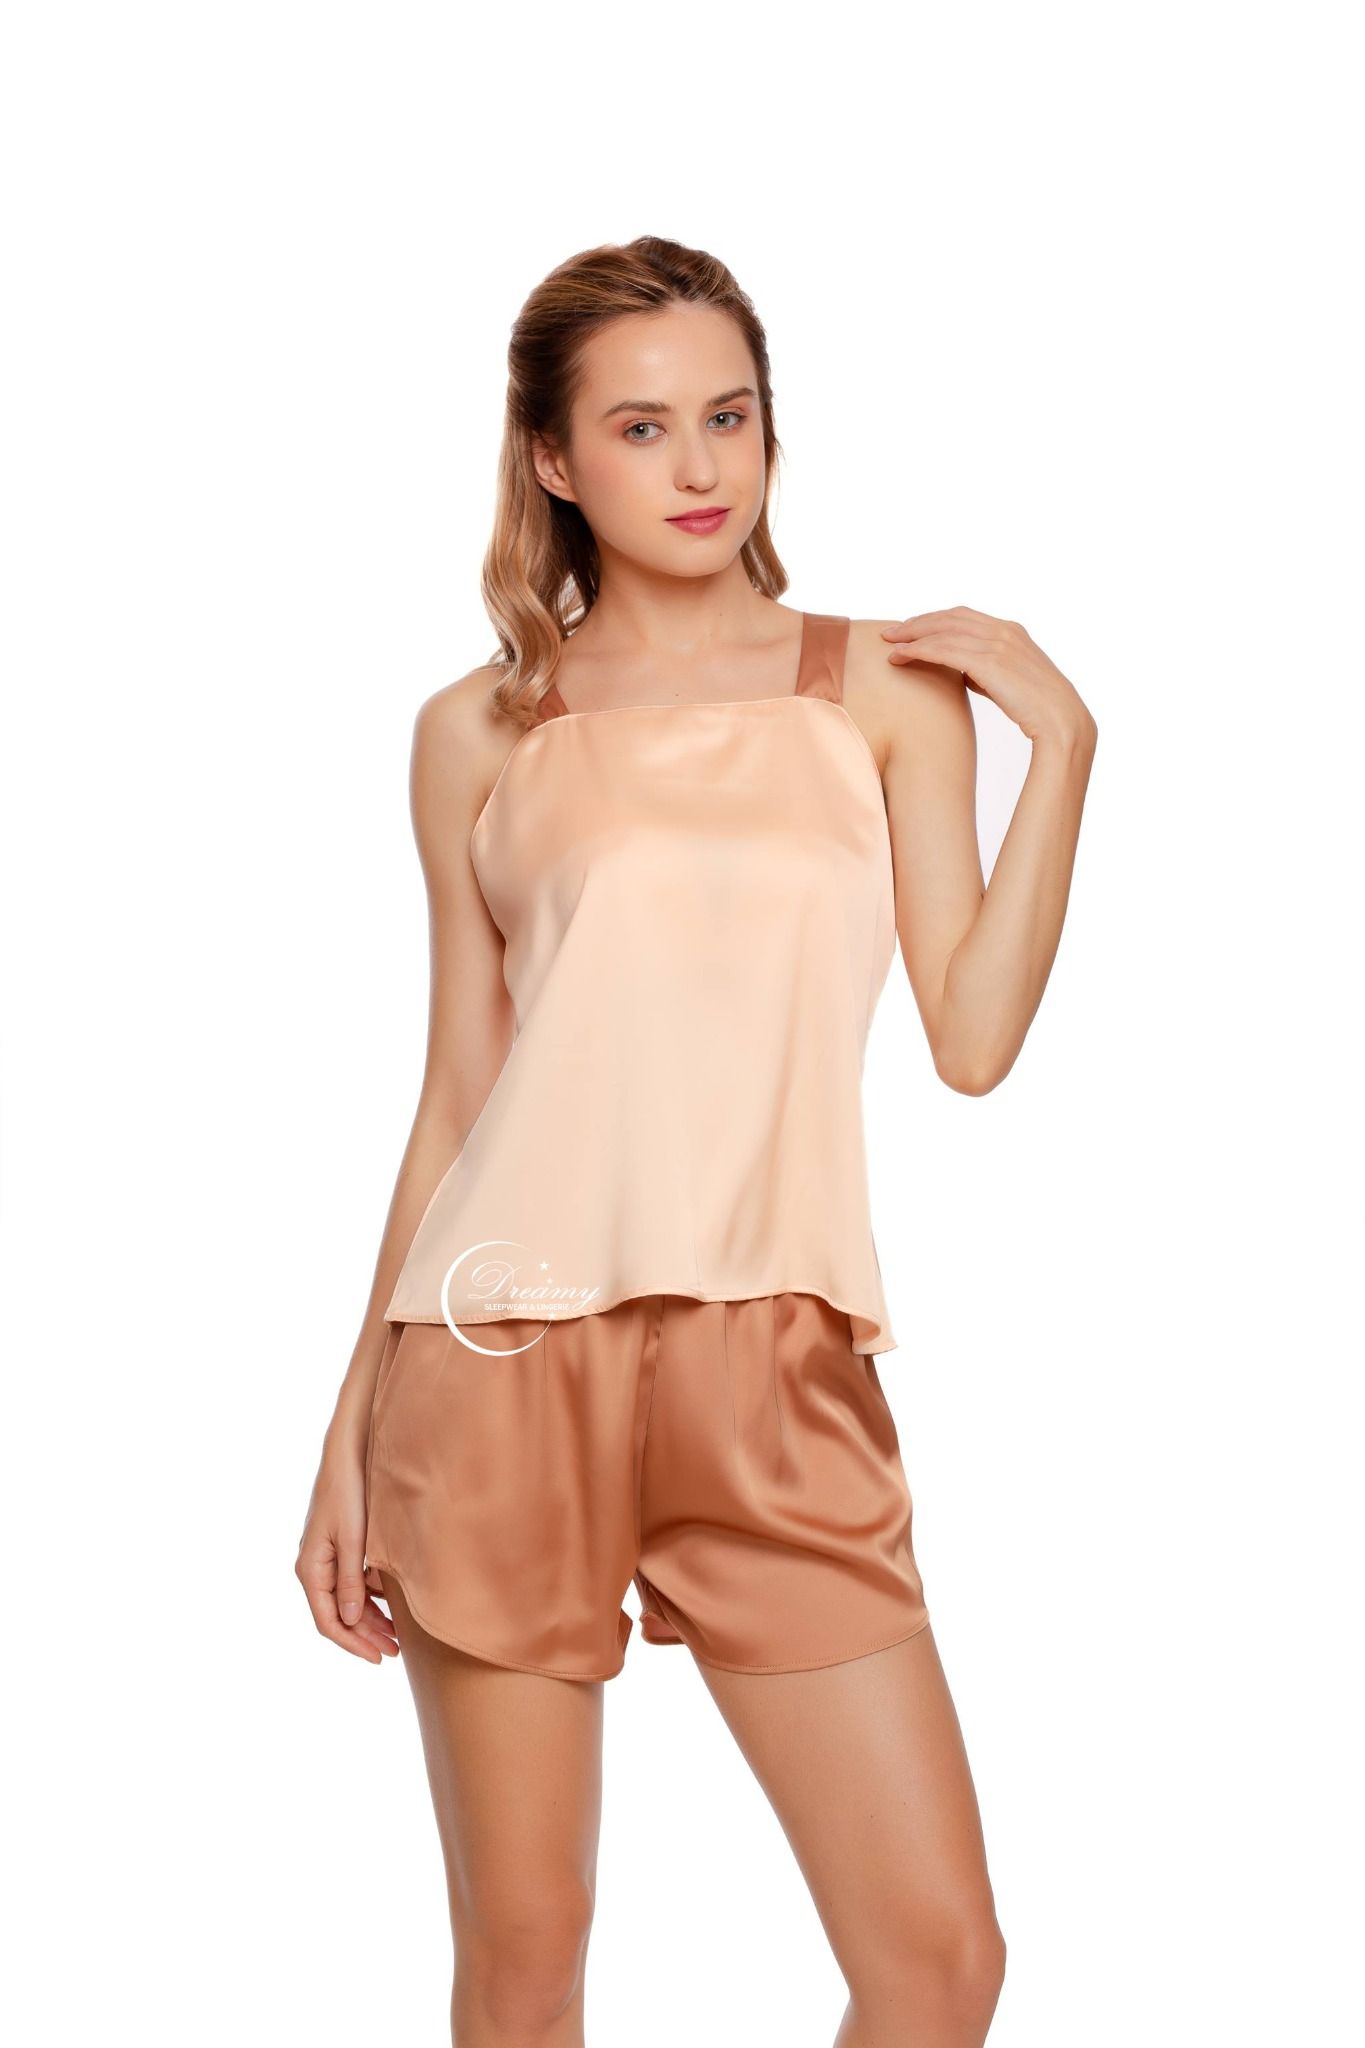  Dreamy- DN22- Đồ bộ quần ngắn áo 2 dây dáng suông nhẹ nhàng nữ tính đồ bộ mặc nhà thoải mái có màu nâu 